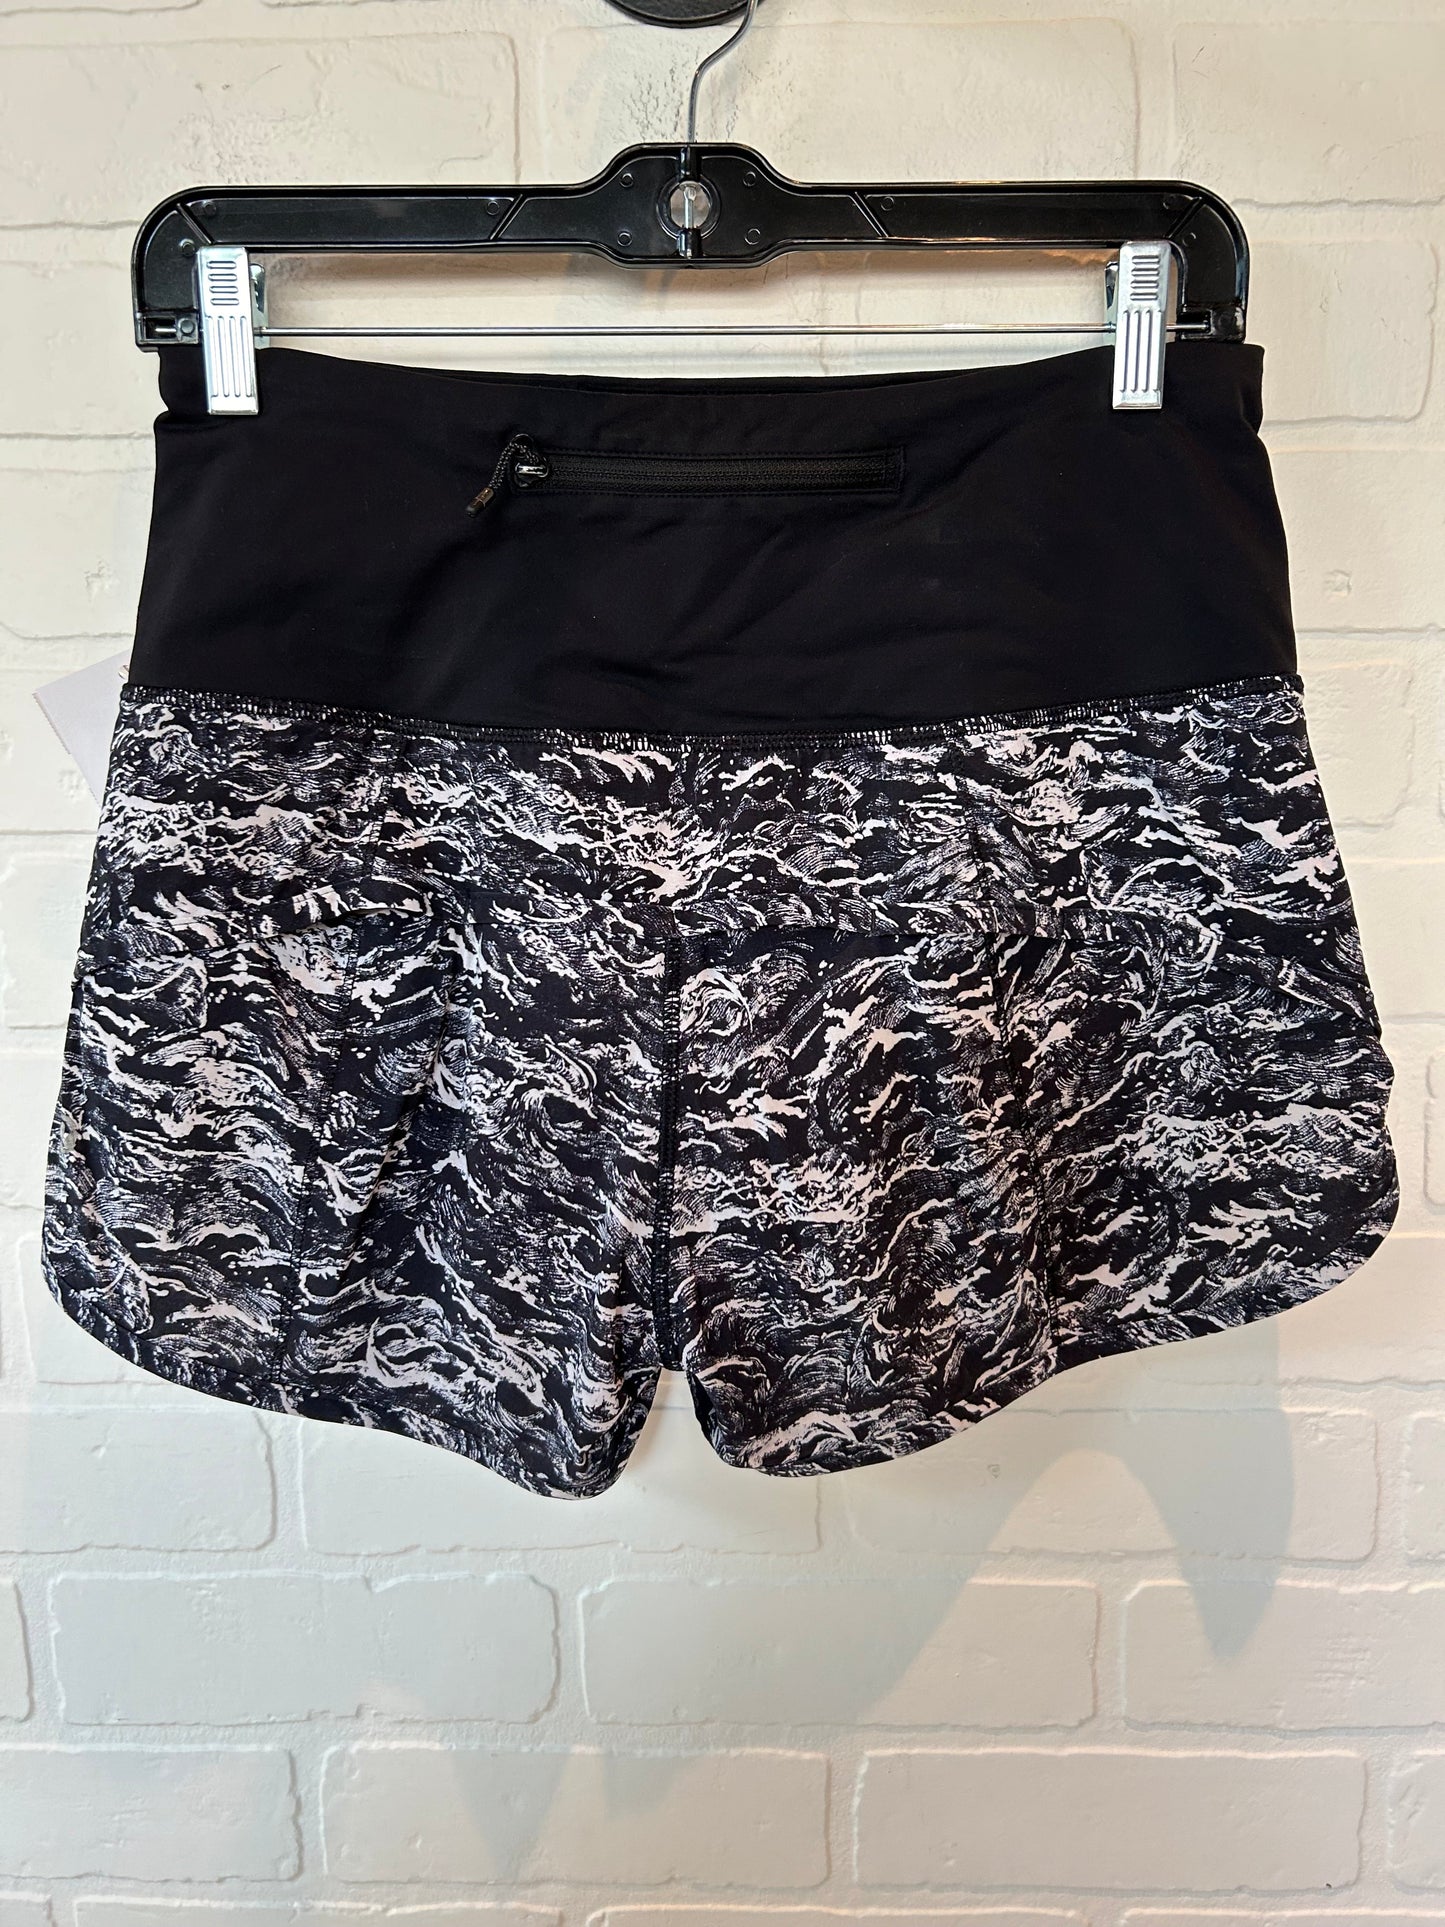 Black & White Athletic Shorts Lululemon, Size 6